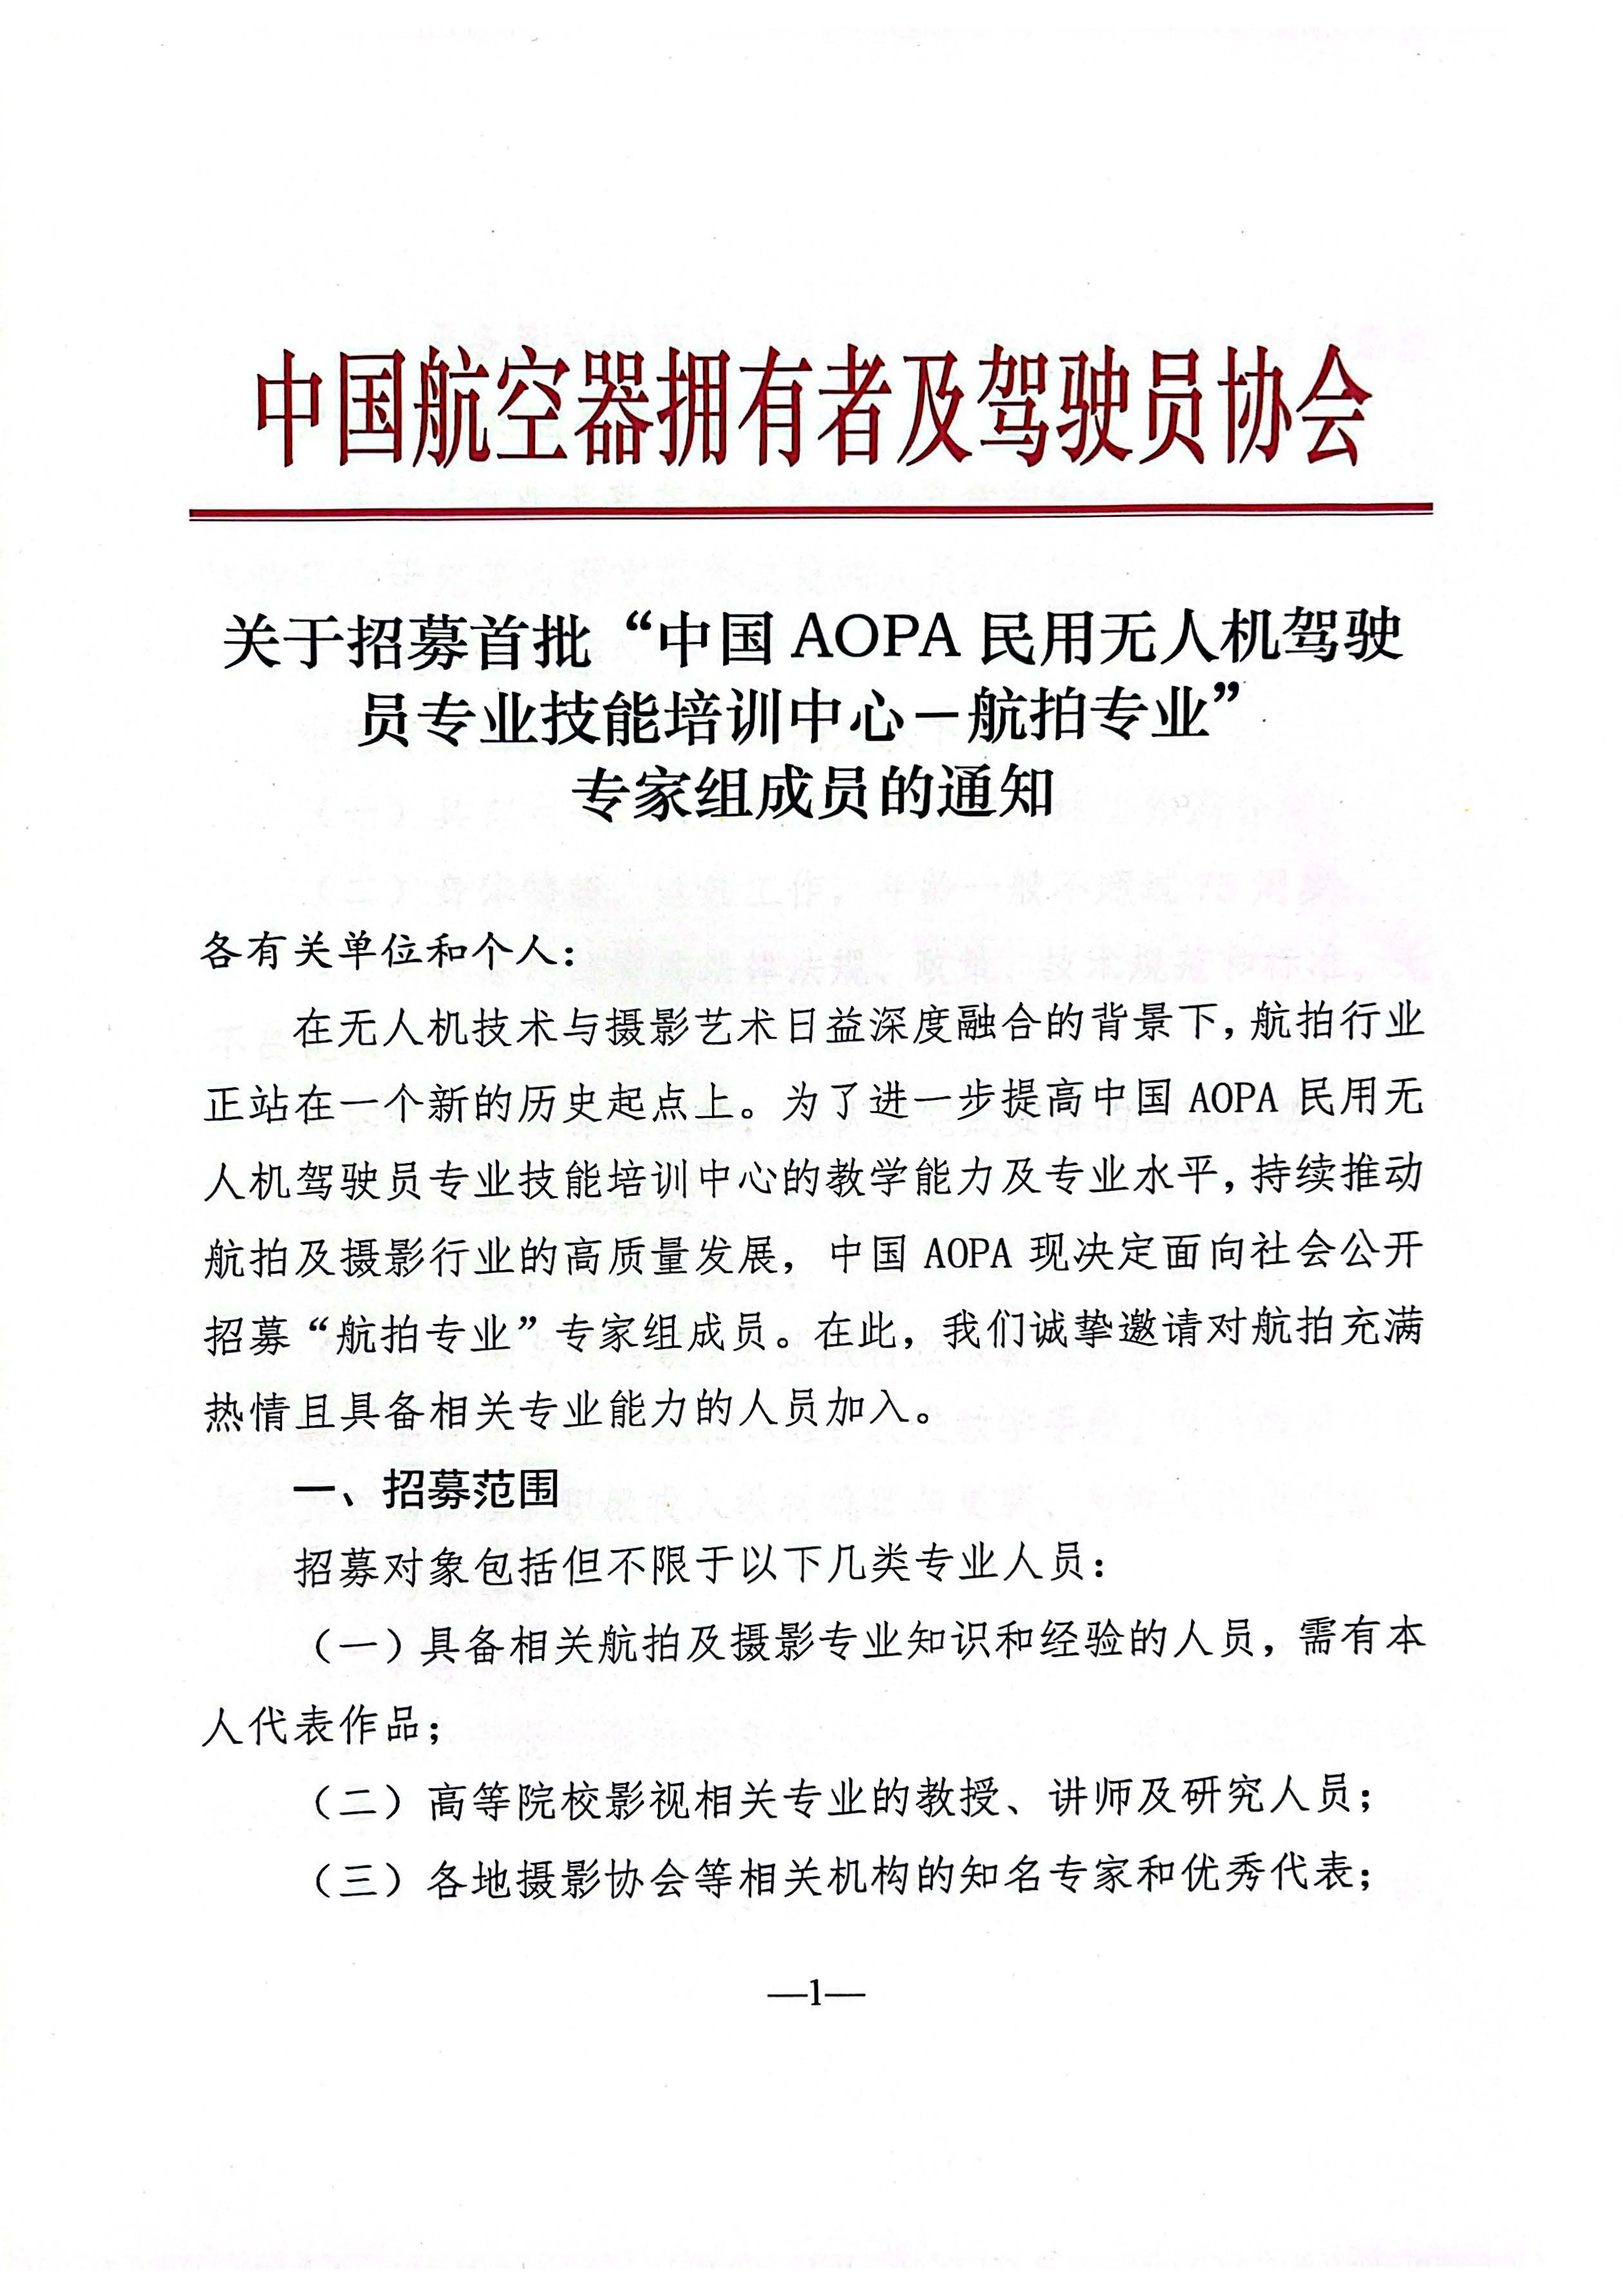 关于招募首批中国AOPA民用无人机驾驶员专业技能培训中心航拍专业专家组成员的通知_页面_1.jpg